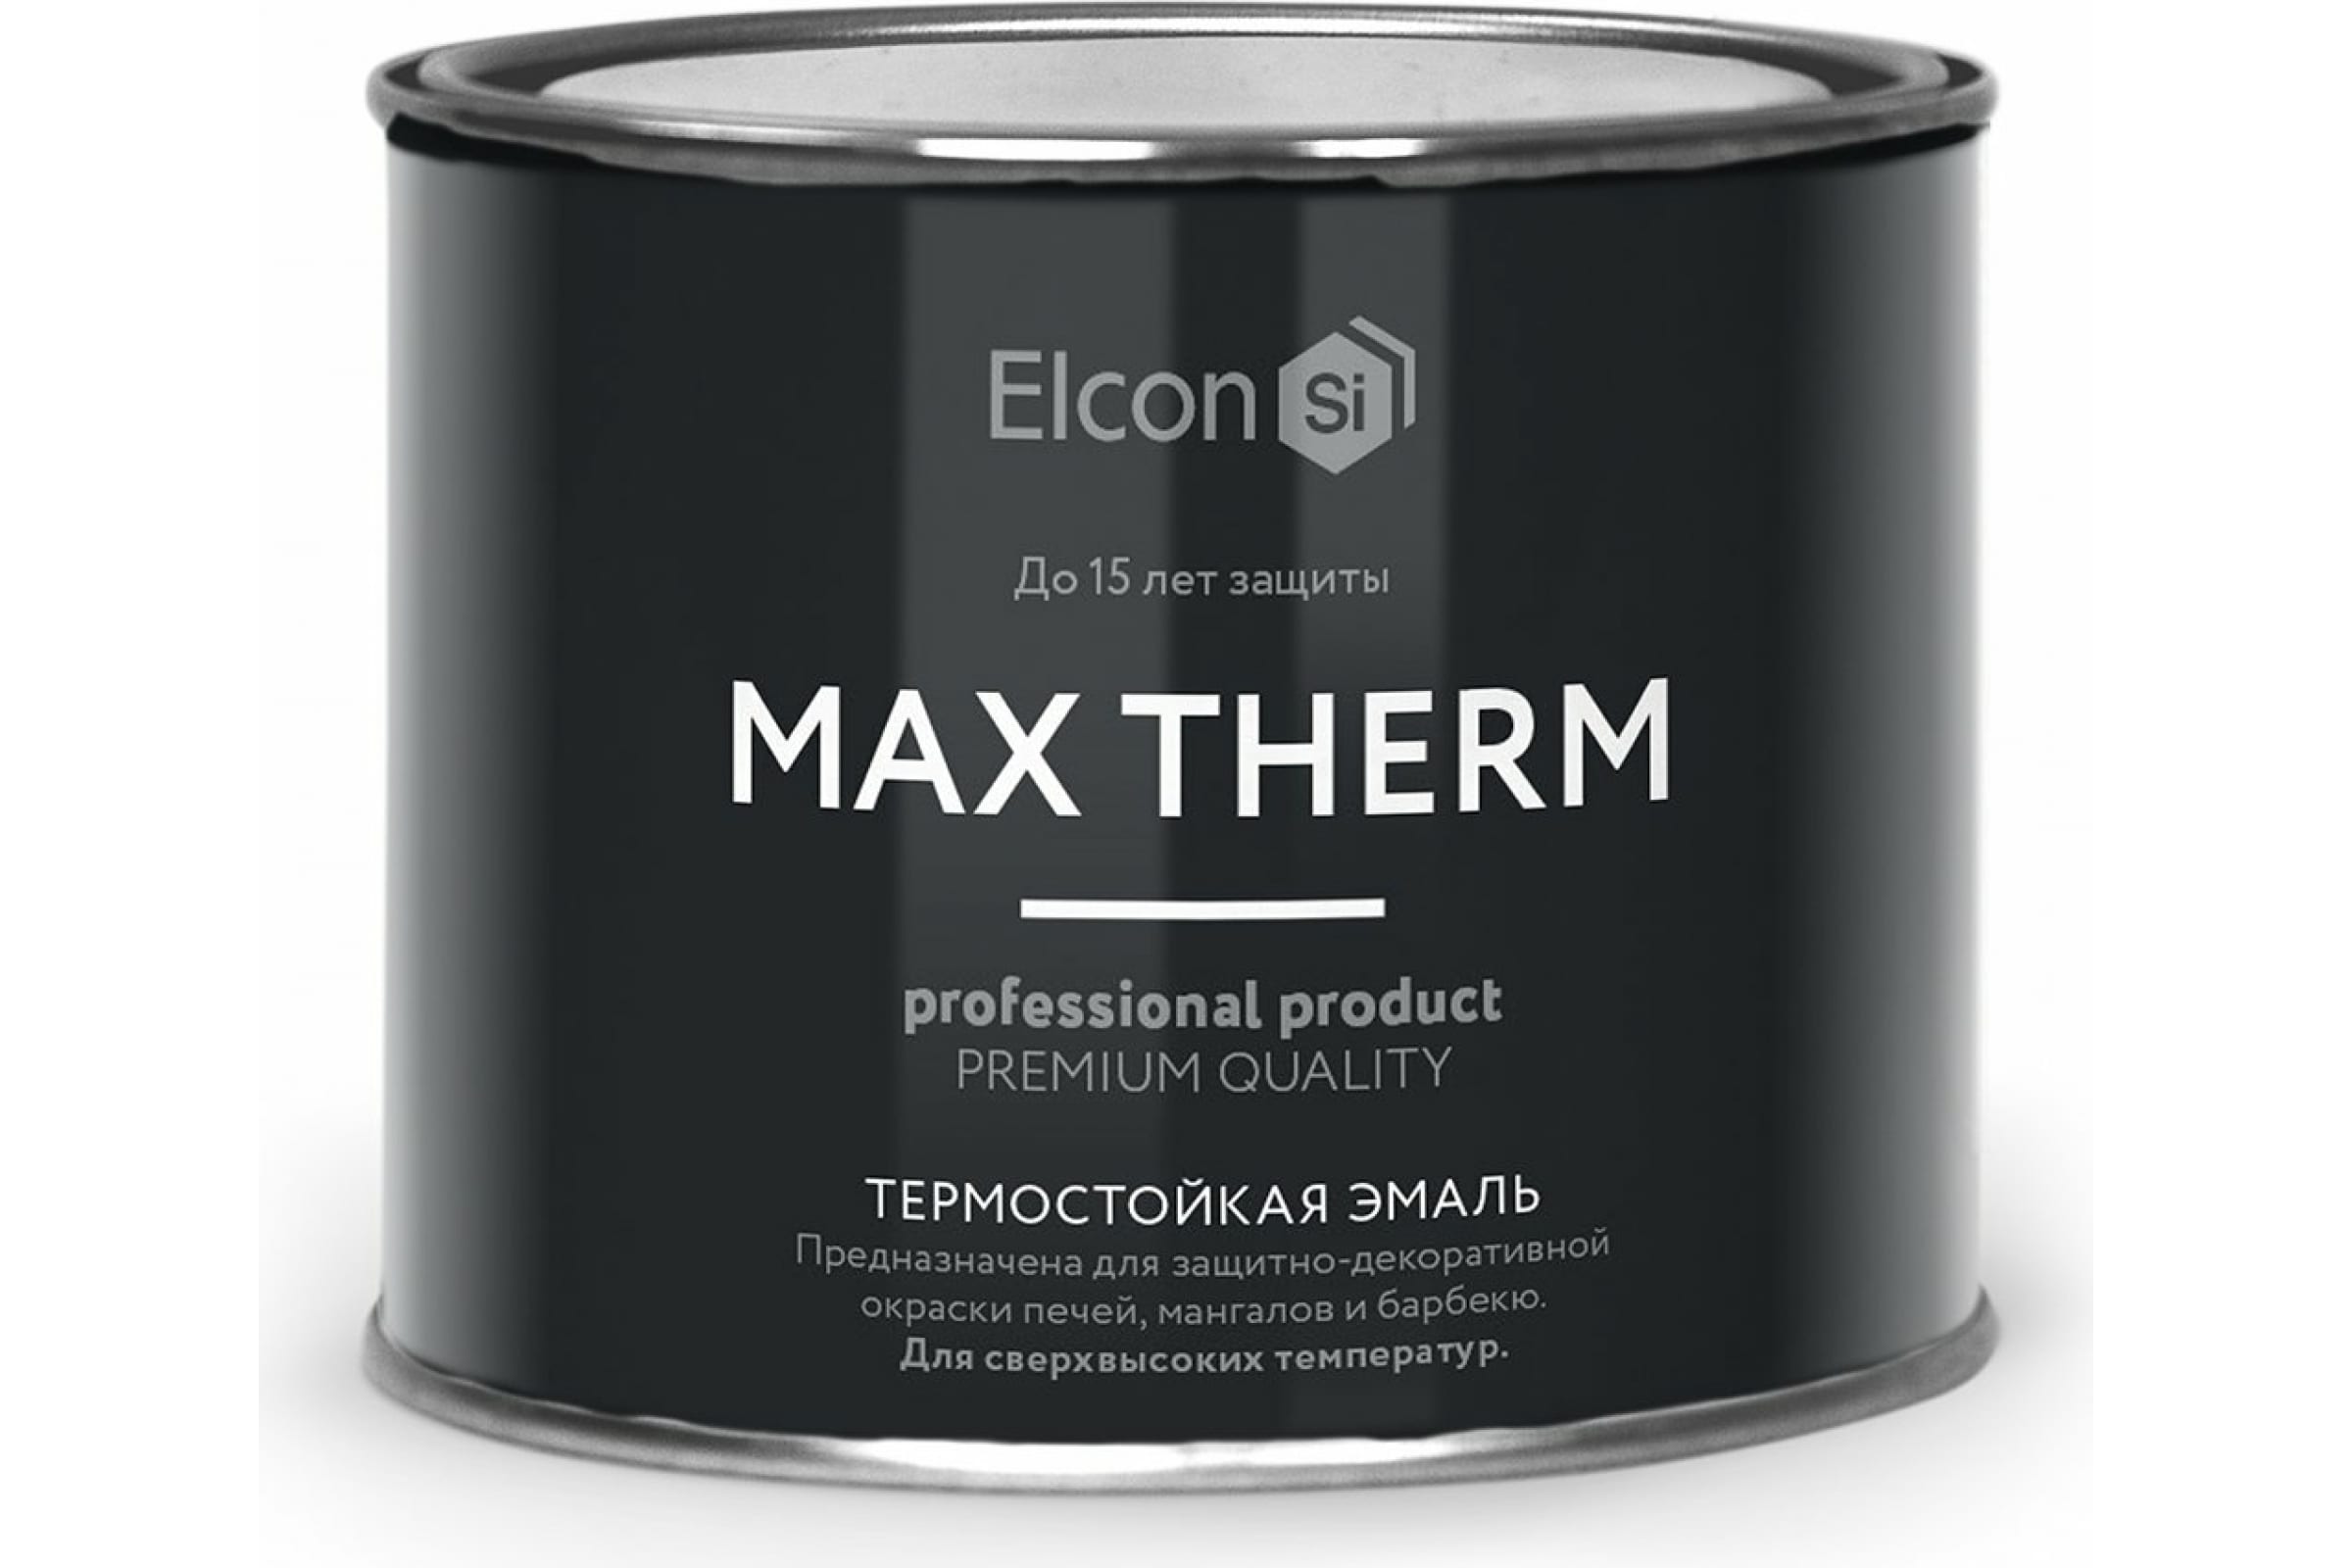 Термостойкая антикоррозионная эмаль Elcon Max Therm до 400 градусов, 0,4 л, желтая термостойкая антикоррозионная эмаль elcon max therm до 700 градусов 0 4 л зеленая